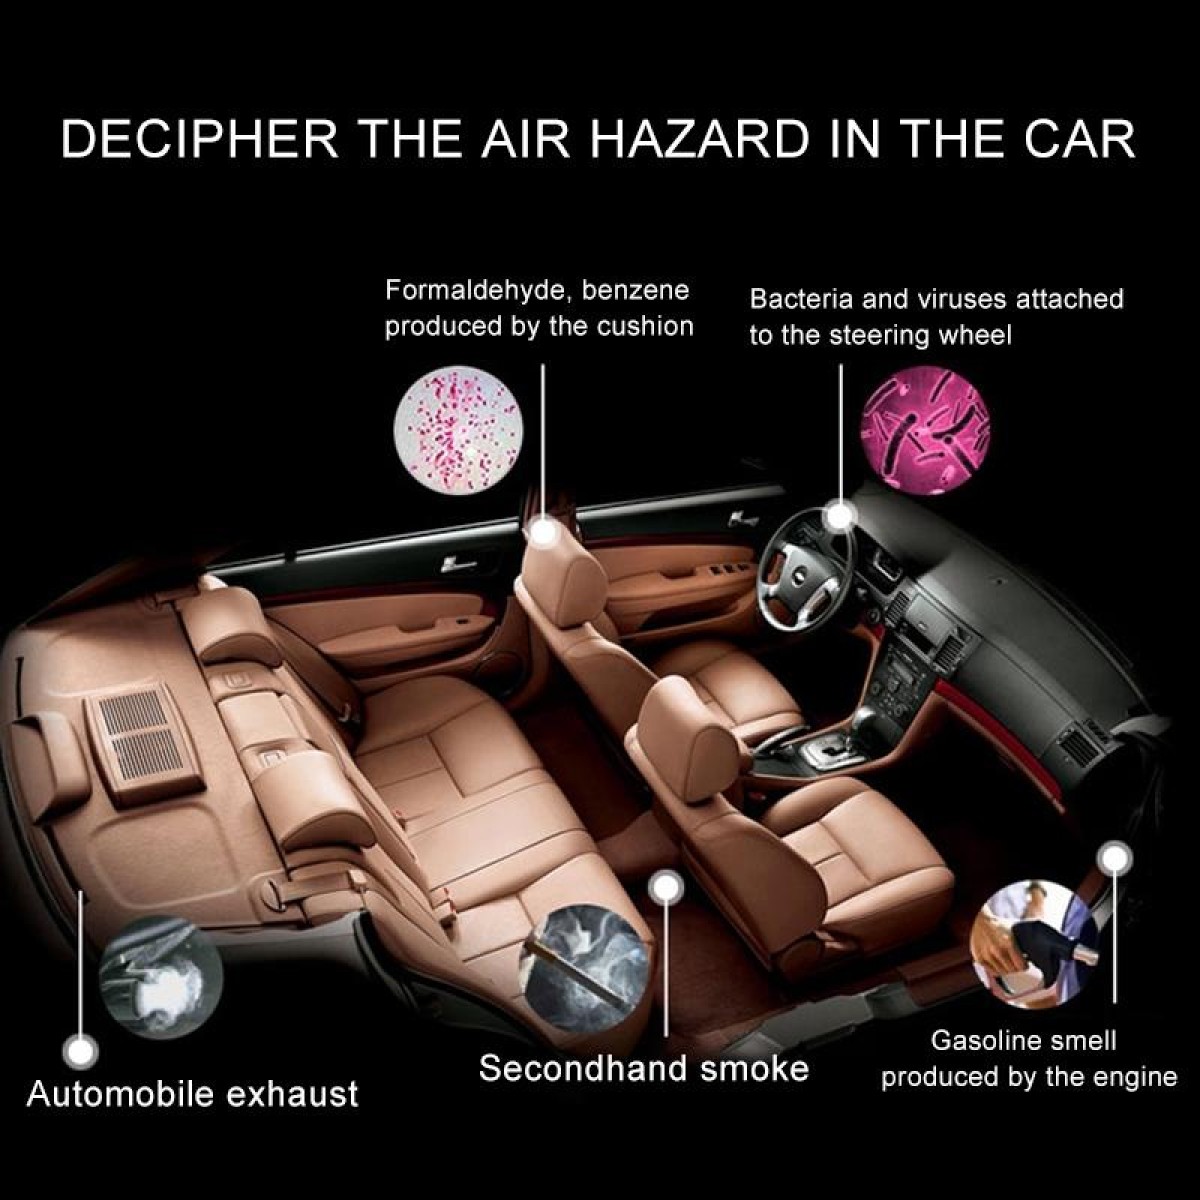 XPower X8 Car MAF Nano Air Purifier Negative Ions Air Cleaner